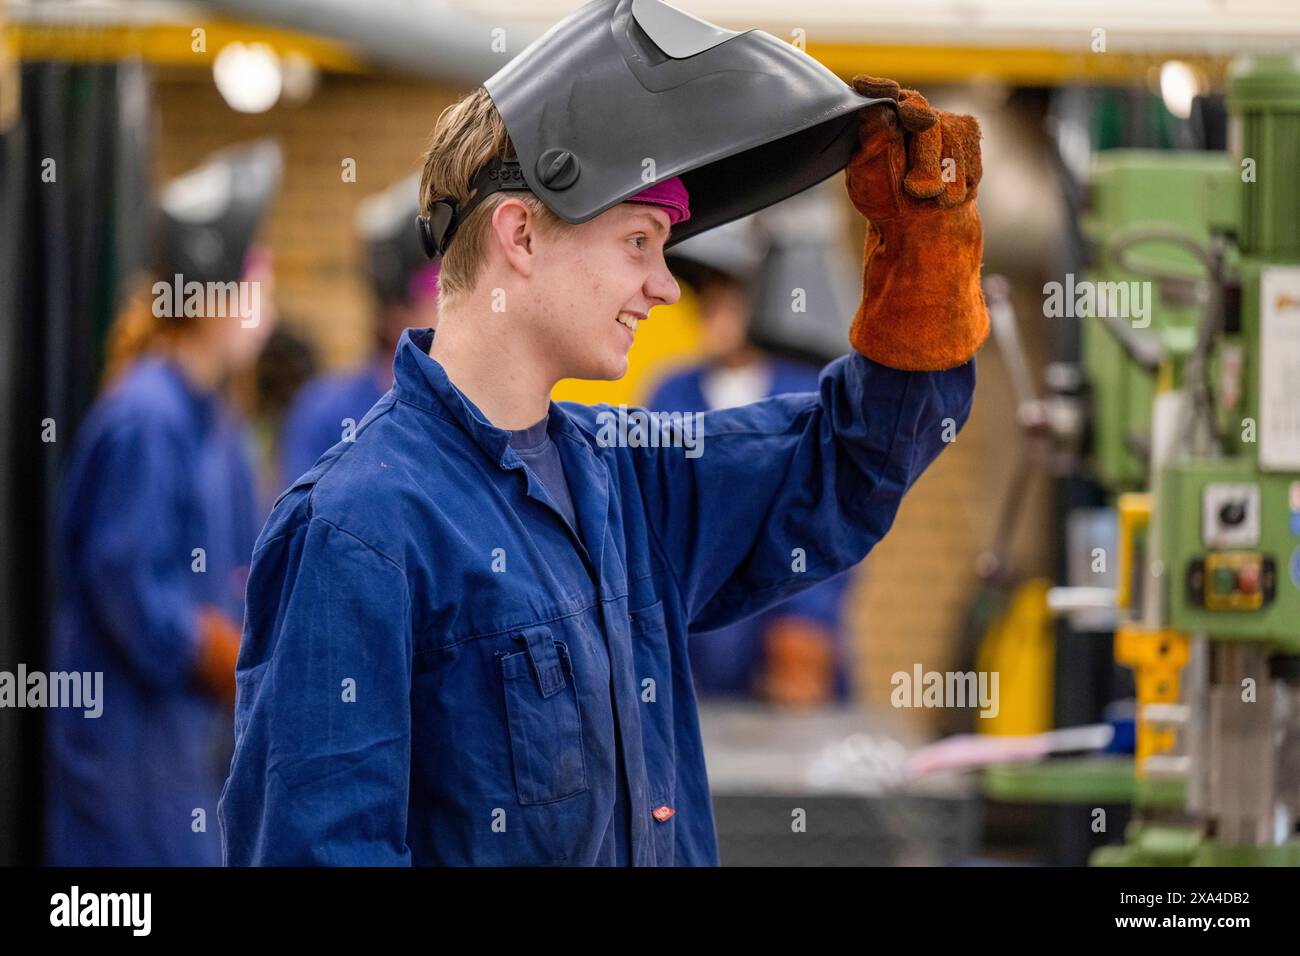 Un giovane sorridente che indossa un'uniforme da lavoro blu sta sollevando la maschera di saldatura con una mano con i guanti in un ambiente industriale. Foto Stock